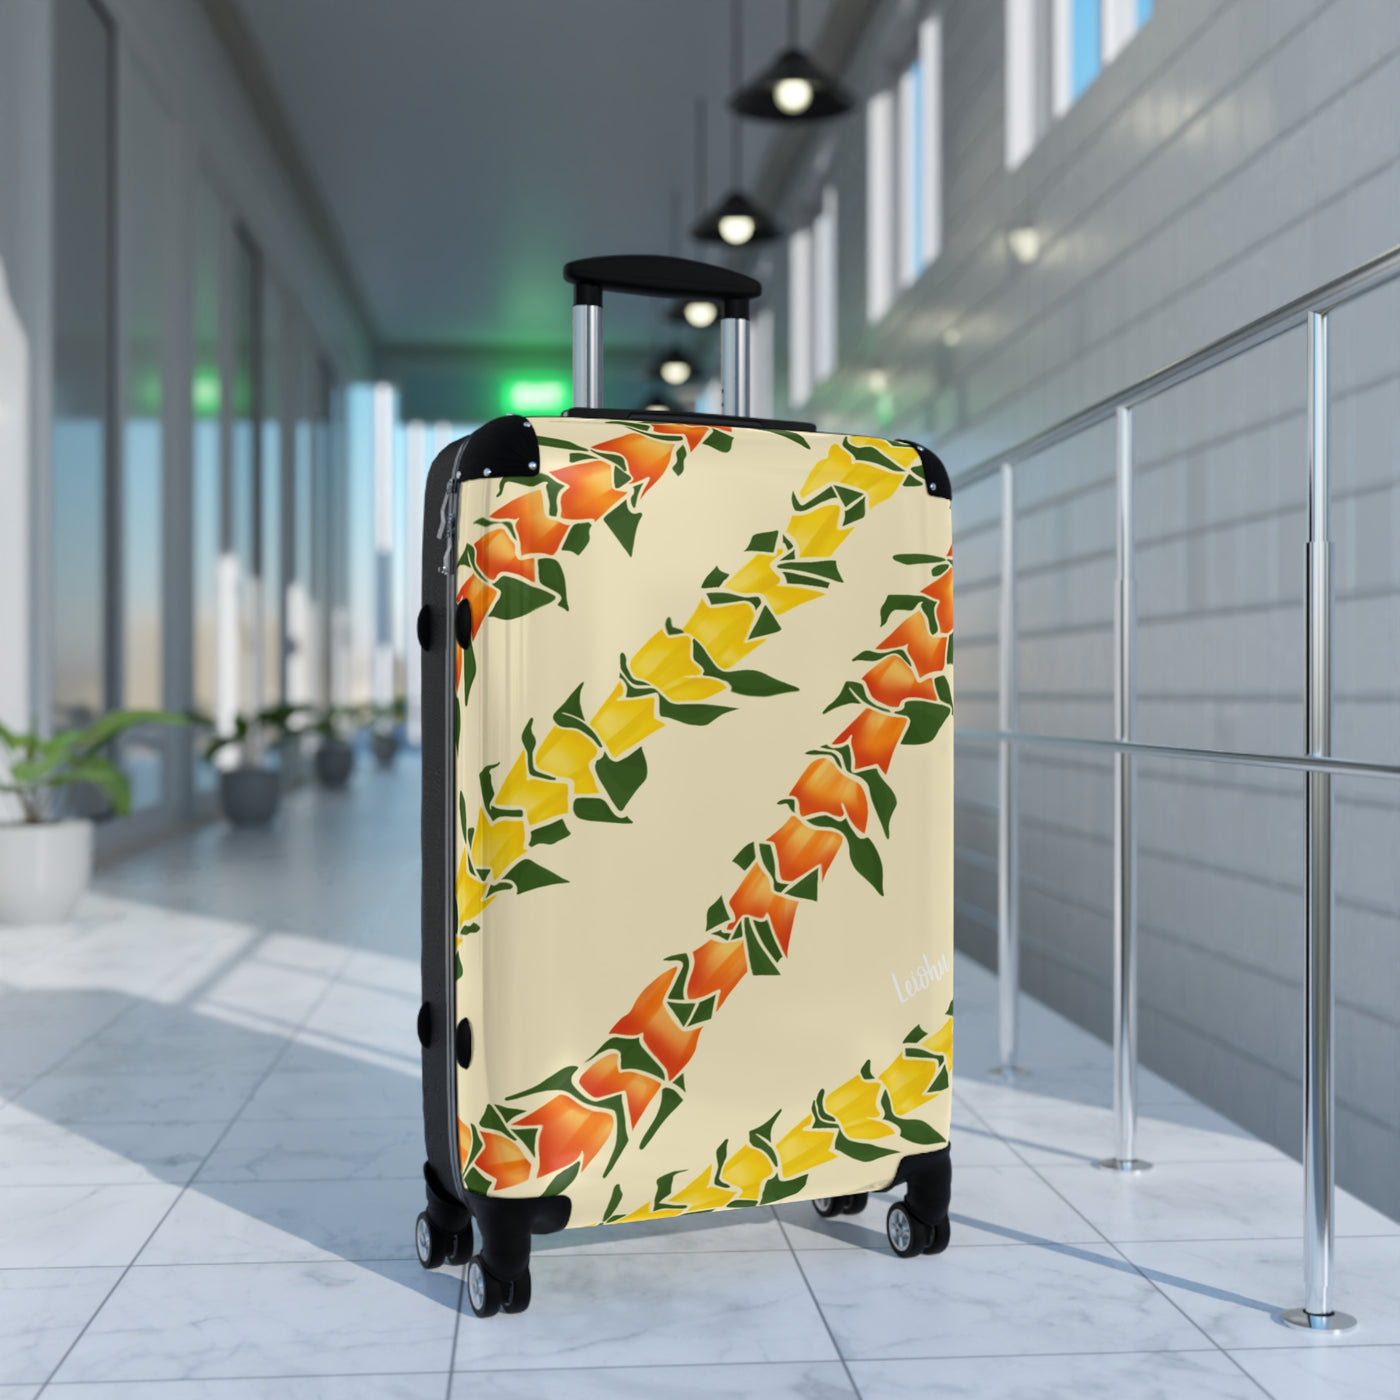 Hala lei - Cabin Suitcase